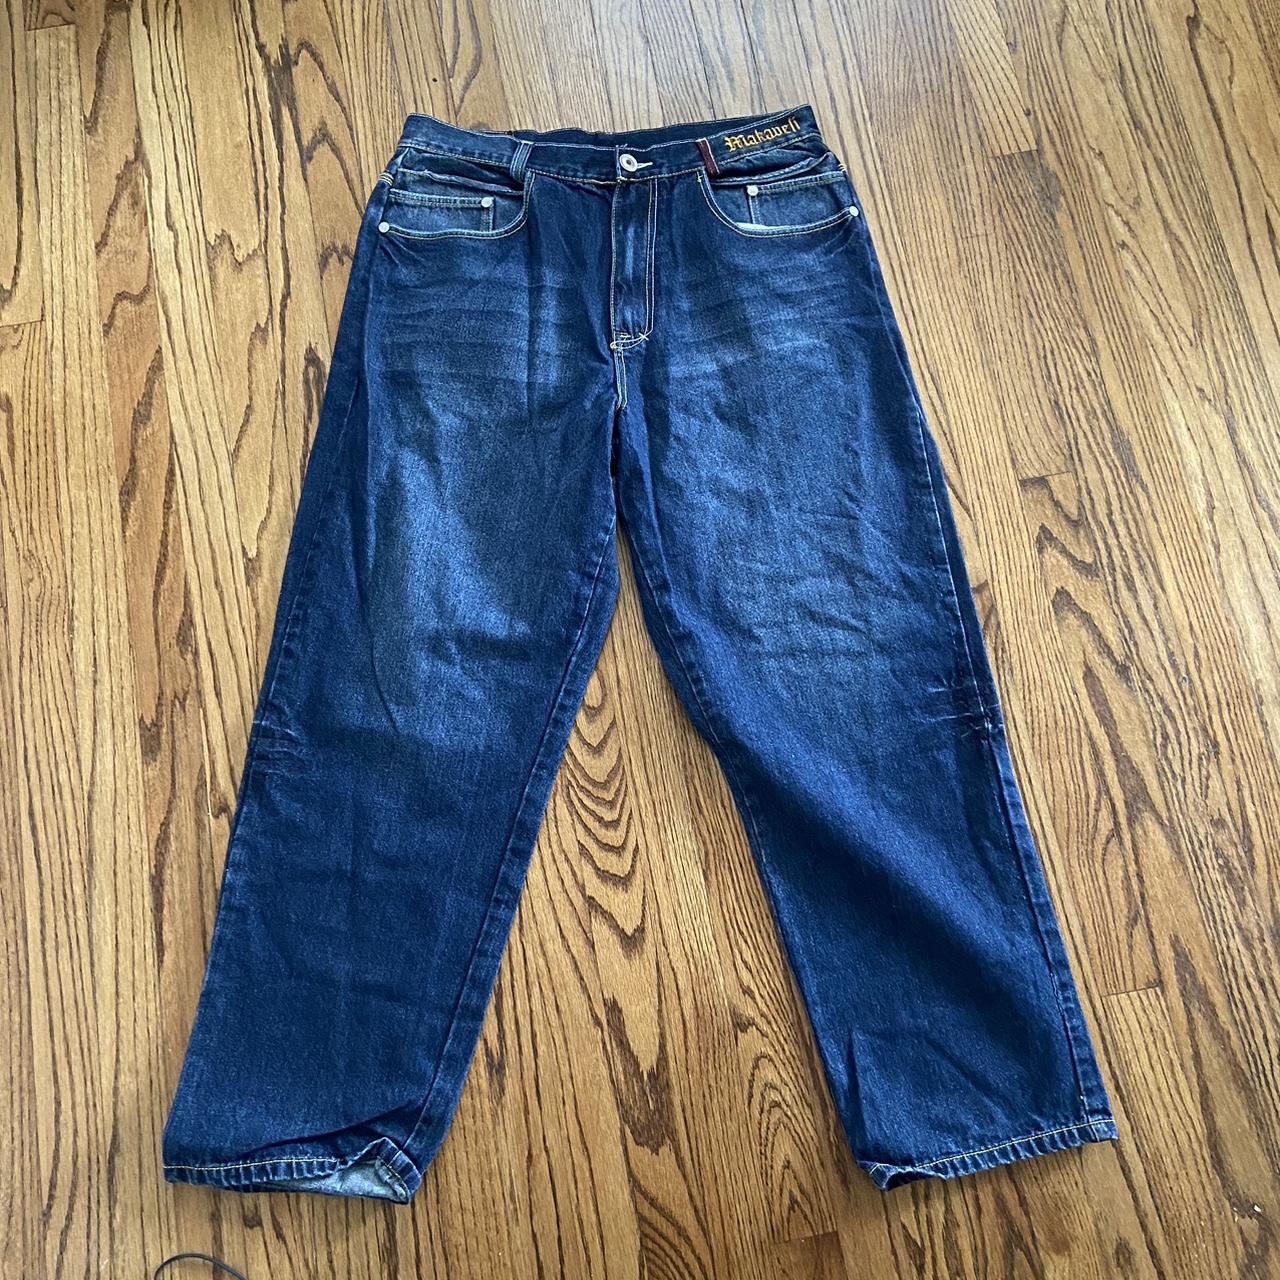 Vintage Tupac makaveli jeans Size 38 #vintage #y2k - Depop